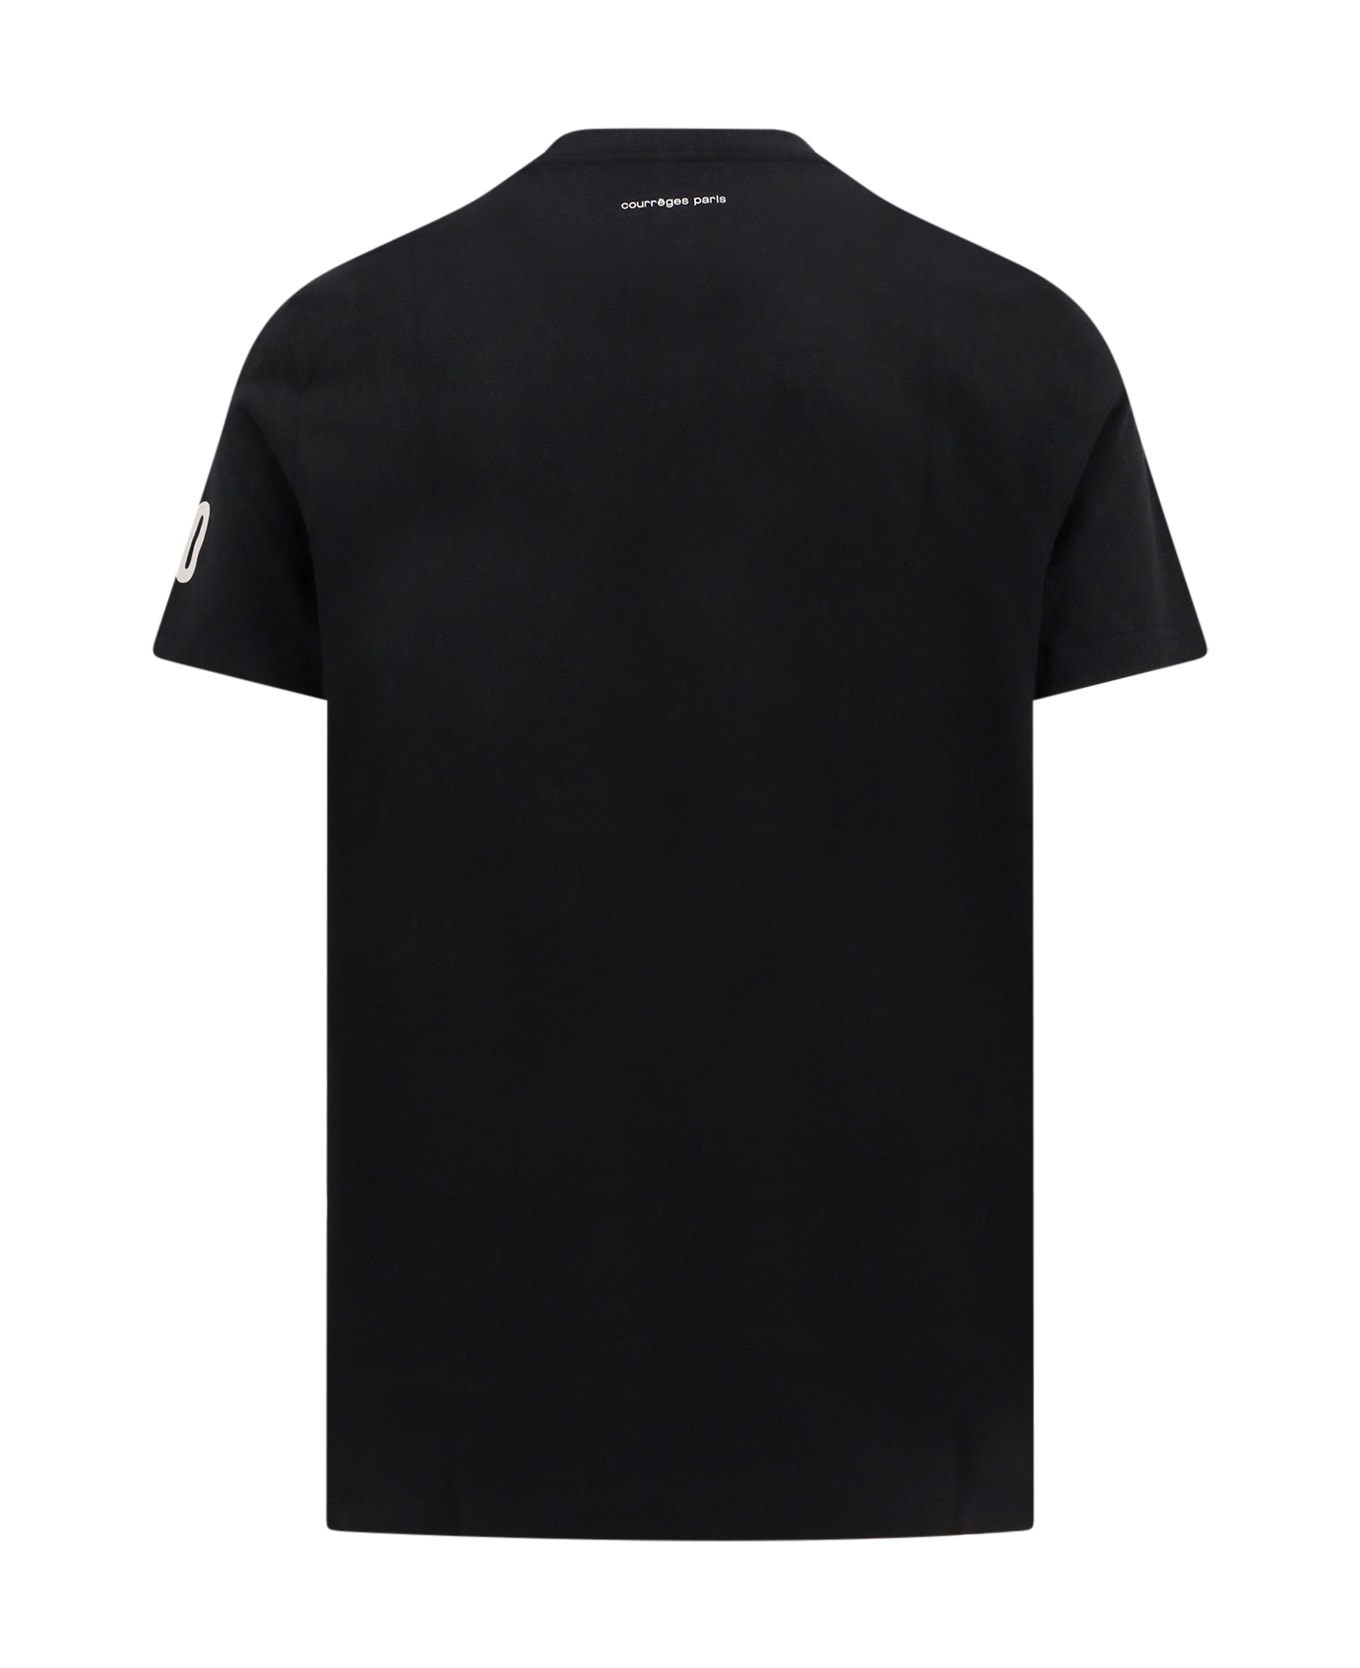 Courrèges T-shirt - Black